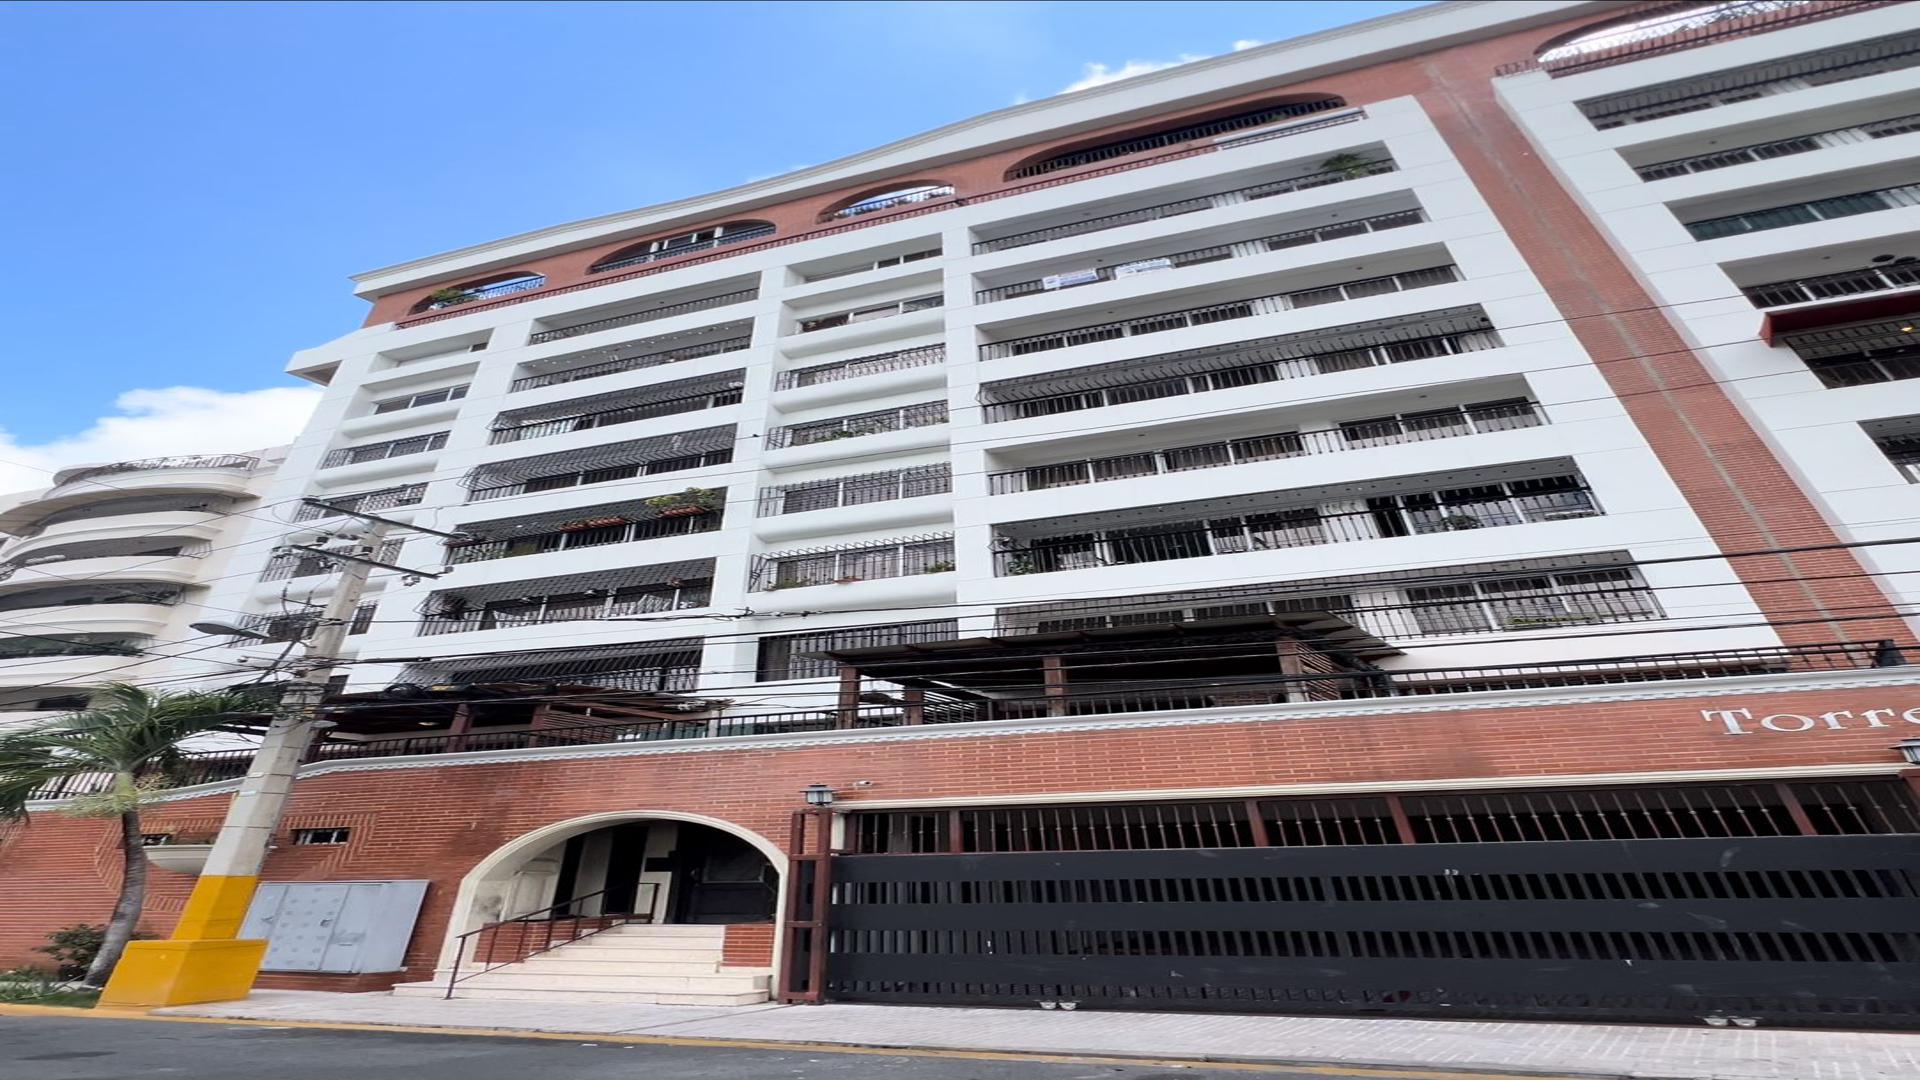 apartamentos - Aparamento disponible en el midmo centro del Poligono Central, Ensanche Naco.